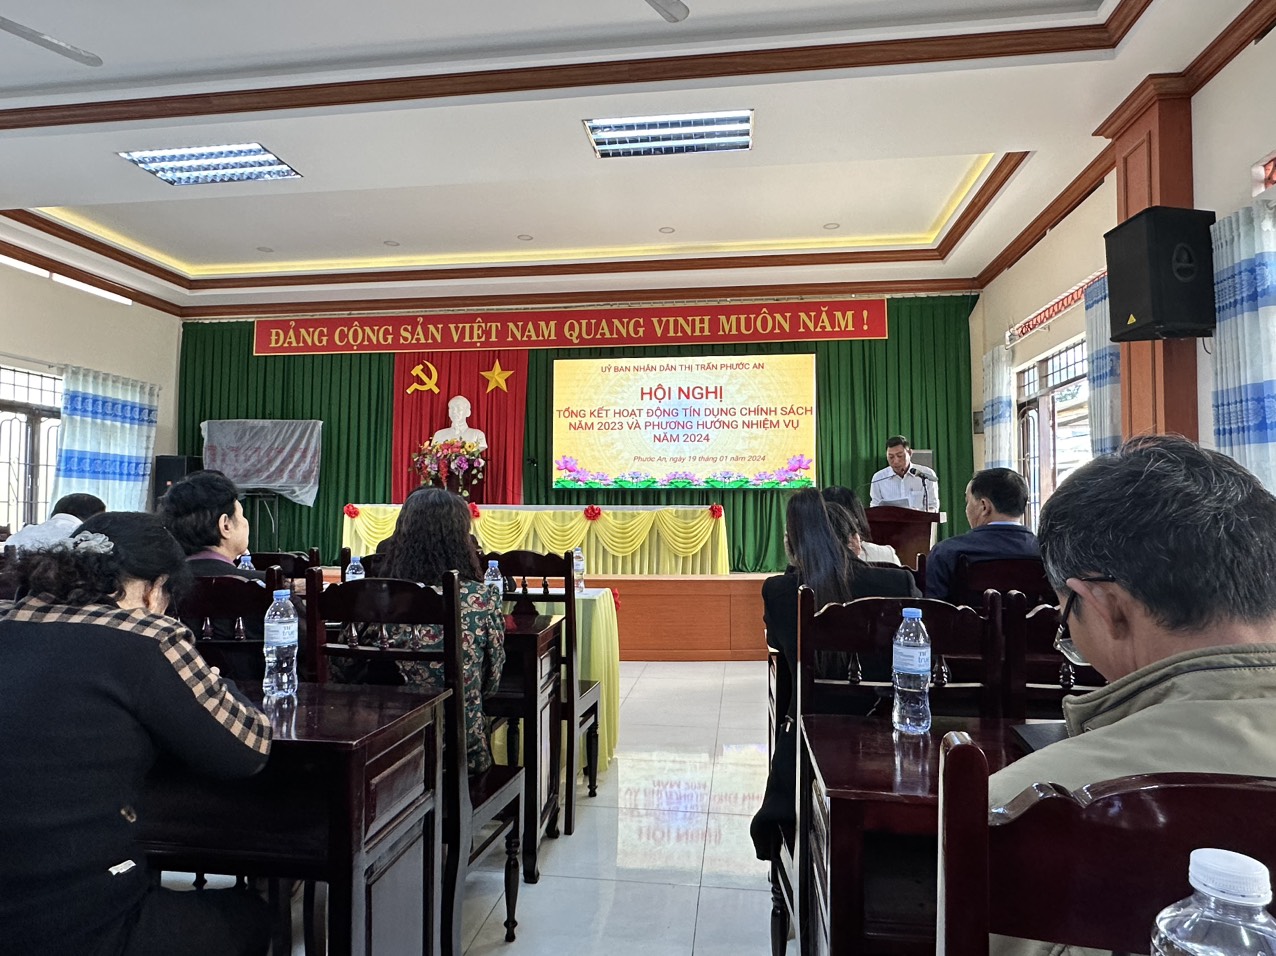 UBND thị trấn Phước An tổ chức Hội nghị tổng kết hoạt động tín dụng chính sách năm 2023 và phương hướng nhiệm vụ năm 2024 .